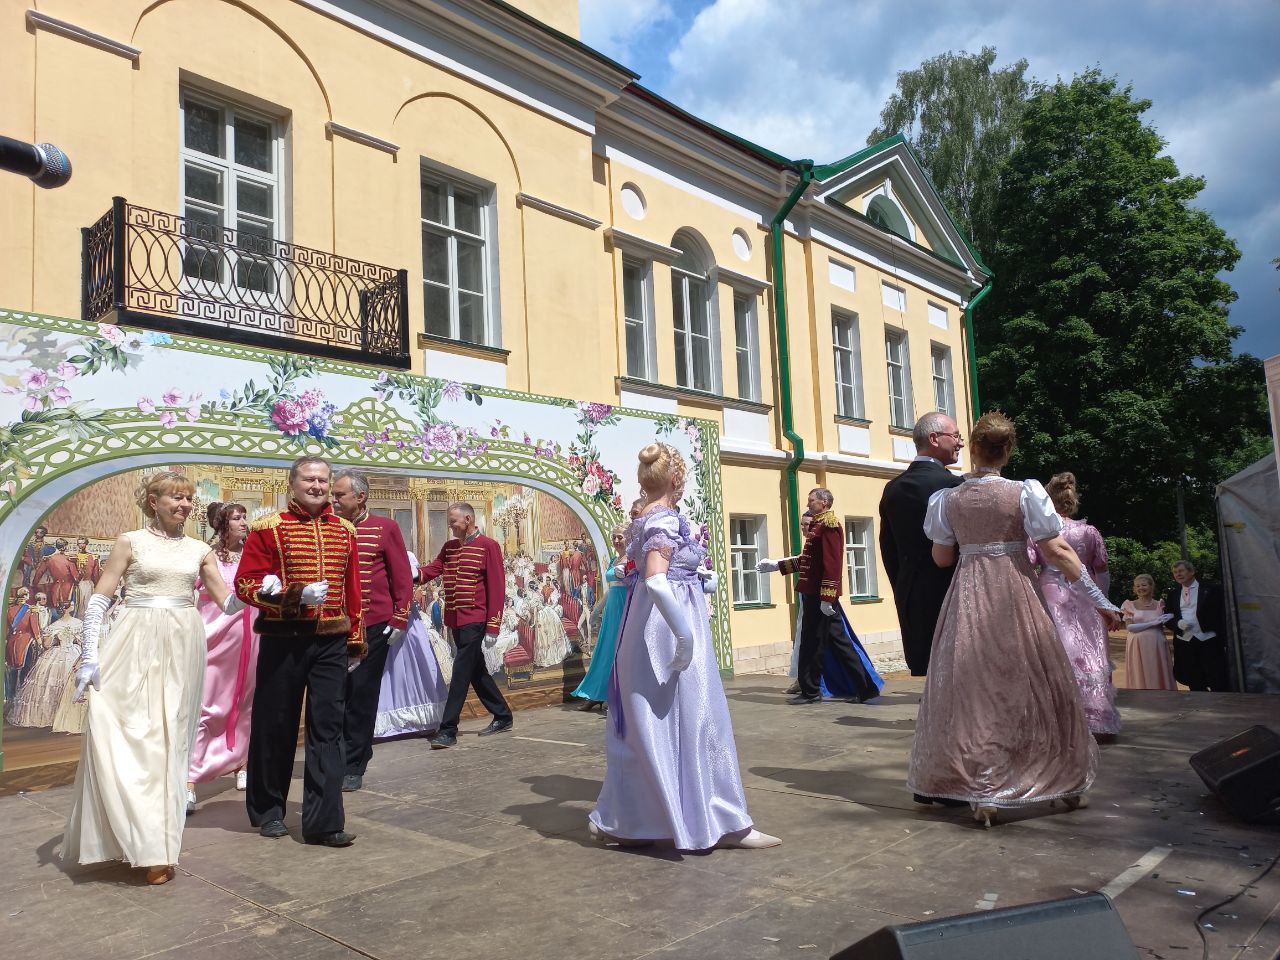 А селе Берново Тверской области проходит традиционный Пушкинский праздник